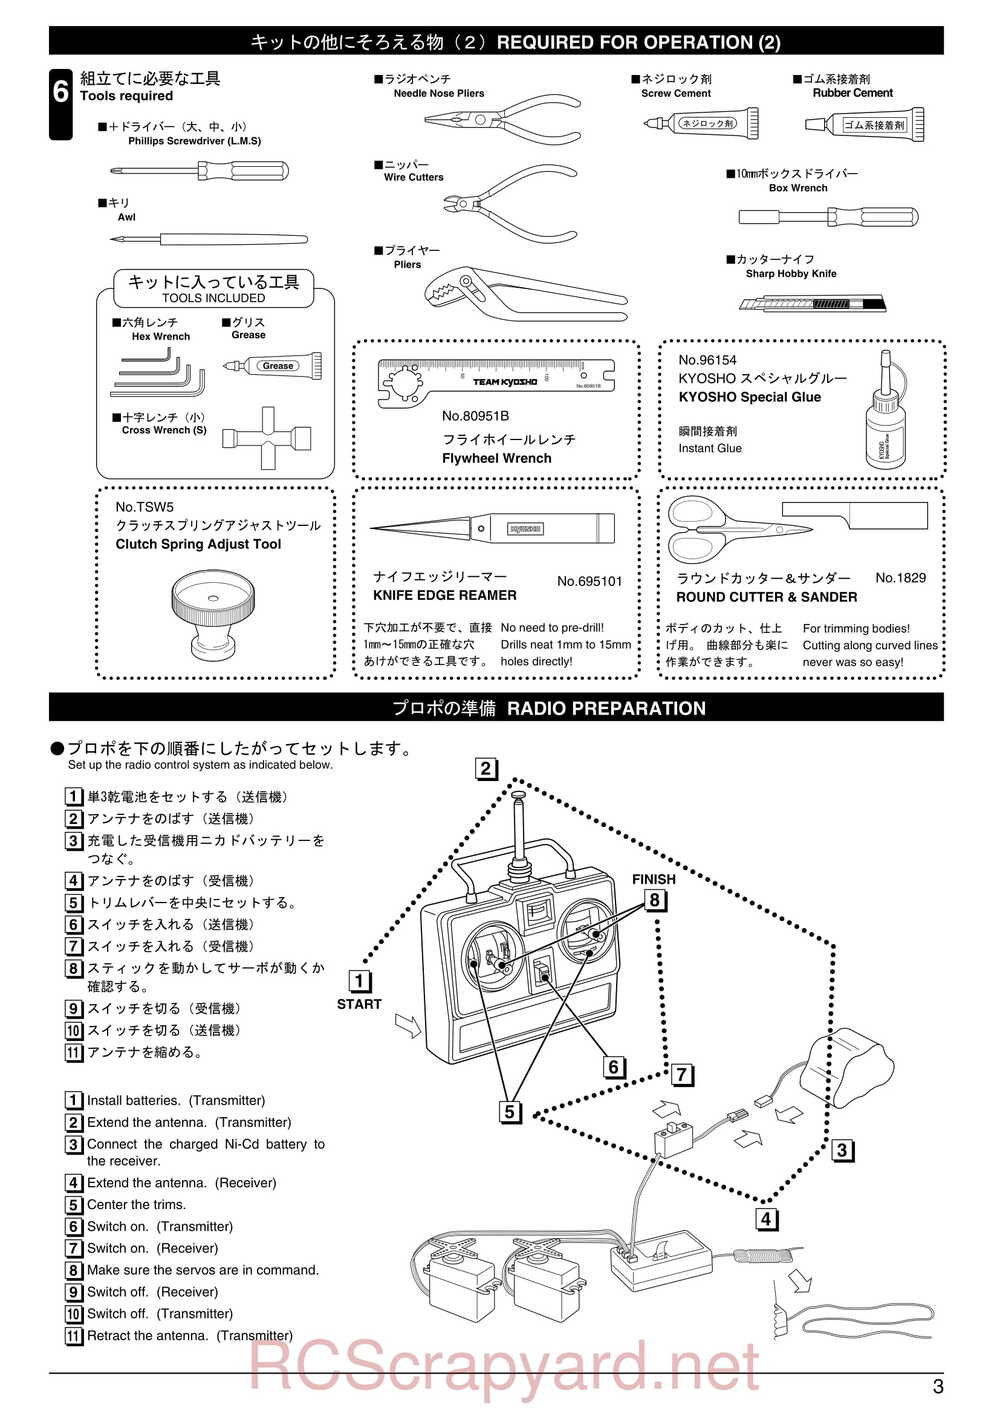 Kyosho - 31255 - V-One RR Evolution - Manual - Page 03